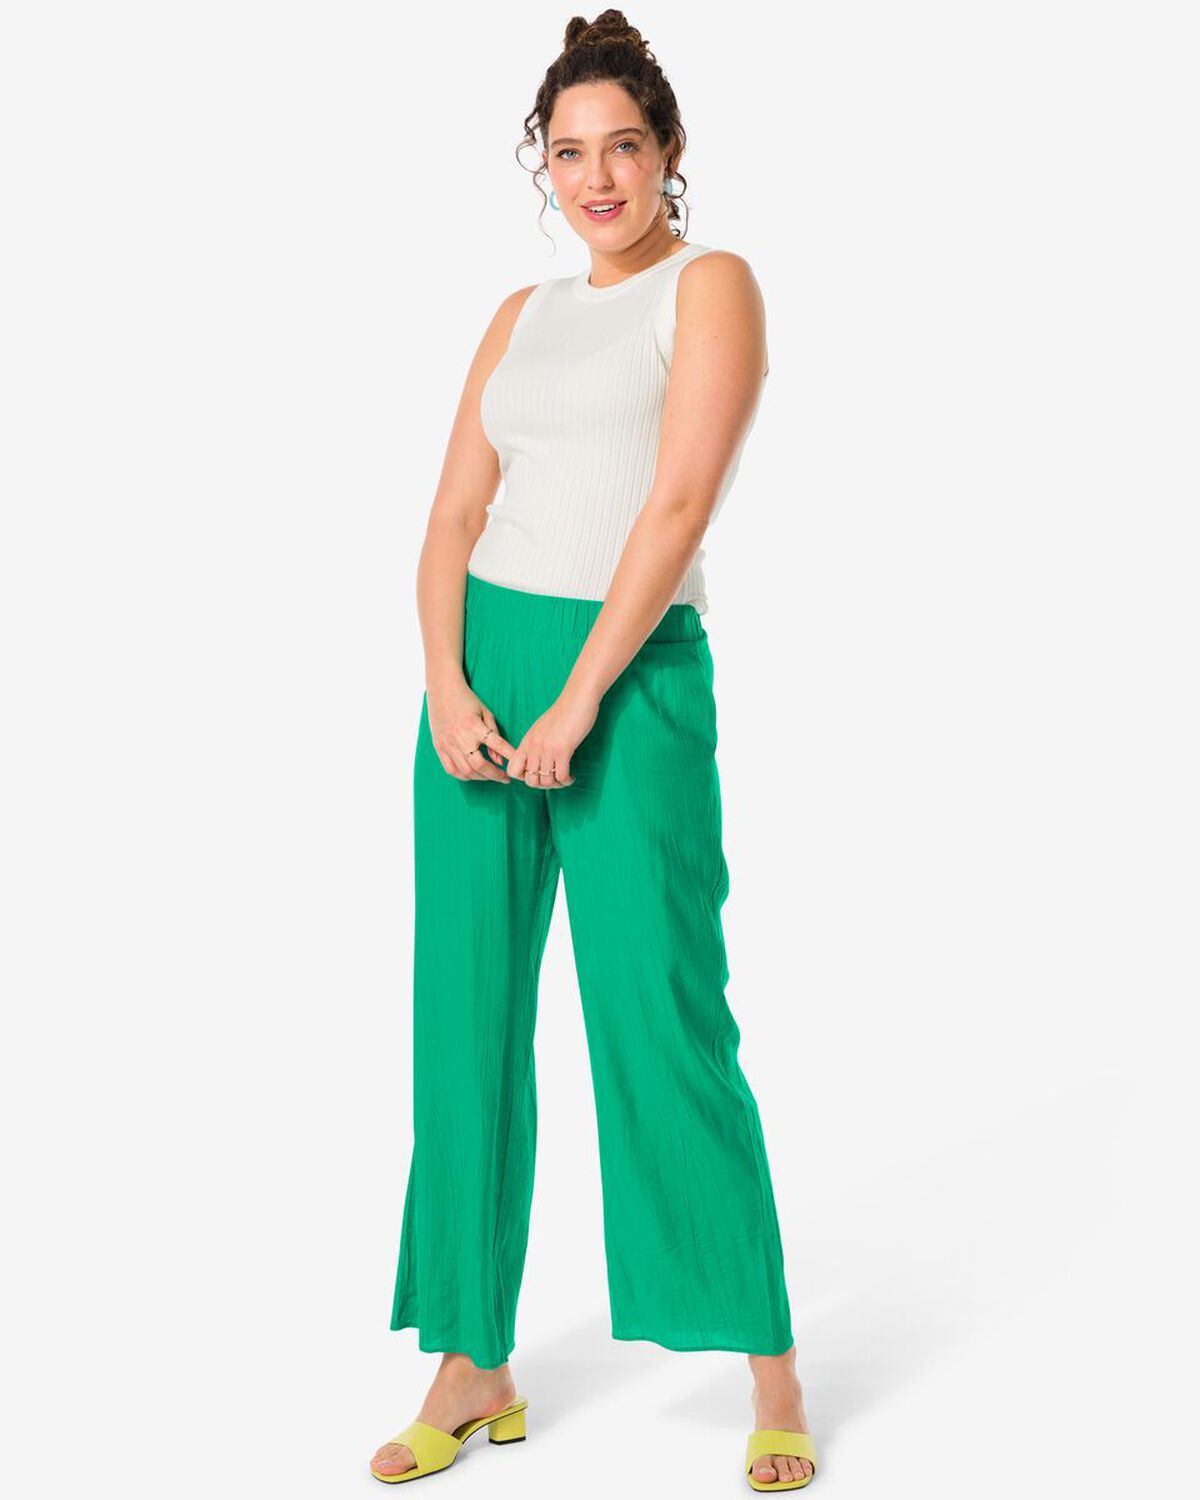 Ensemble femme composé d'un pantalon vert et d'un haut blanc - 200947.0 - HEMA